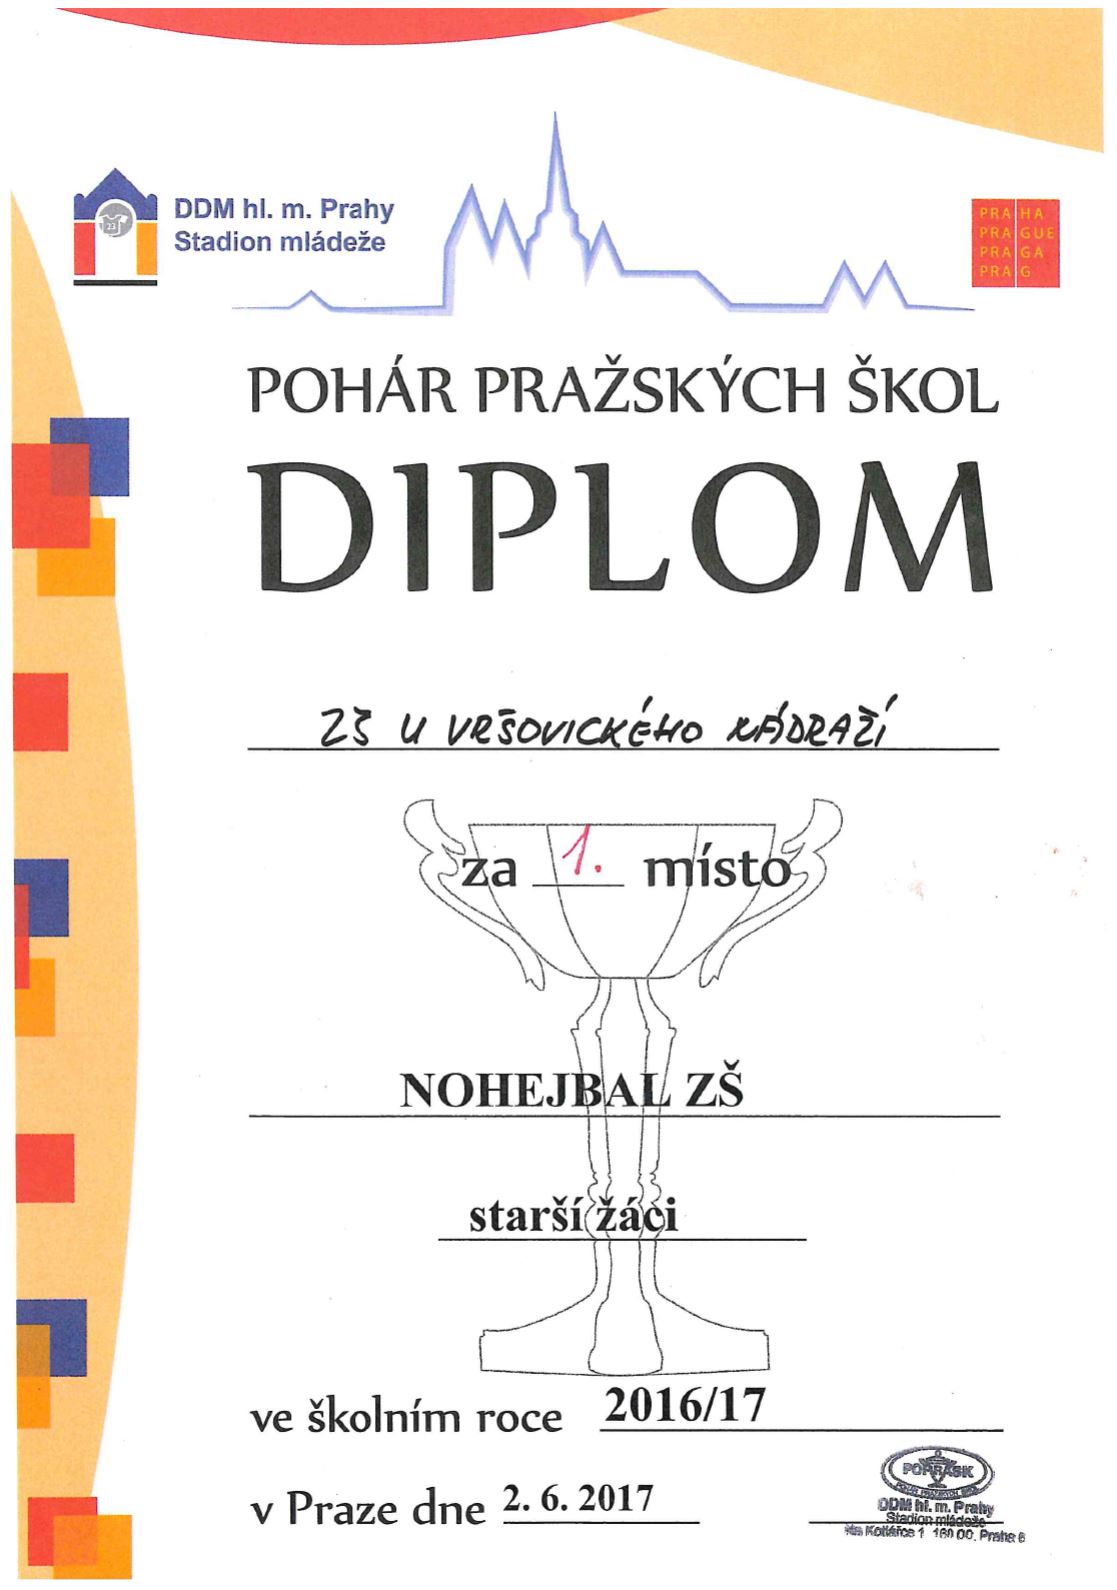 Diplom nohejbal 1.Praha.JPG